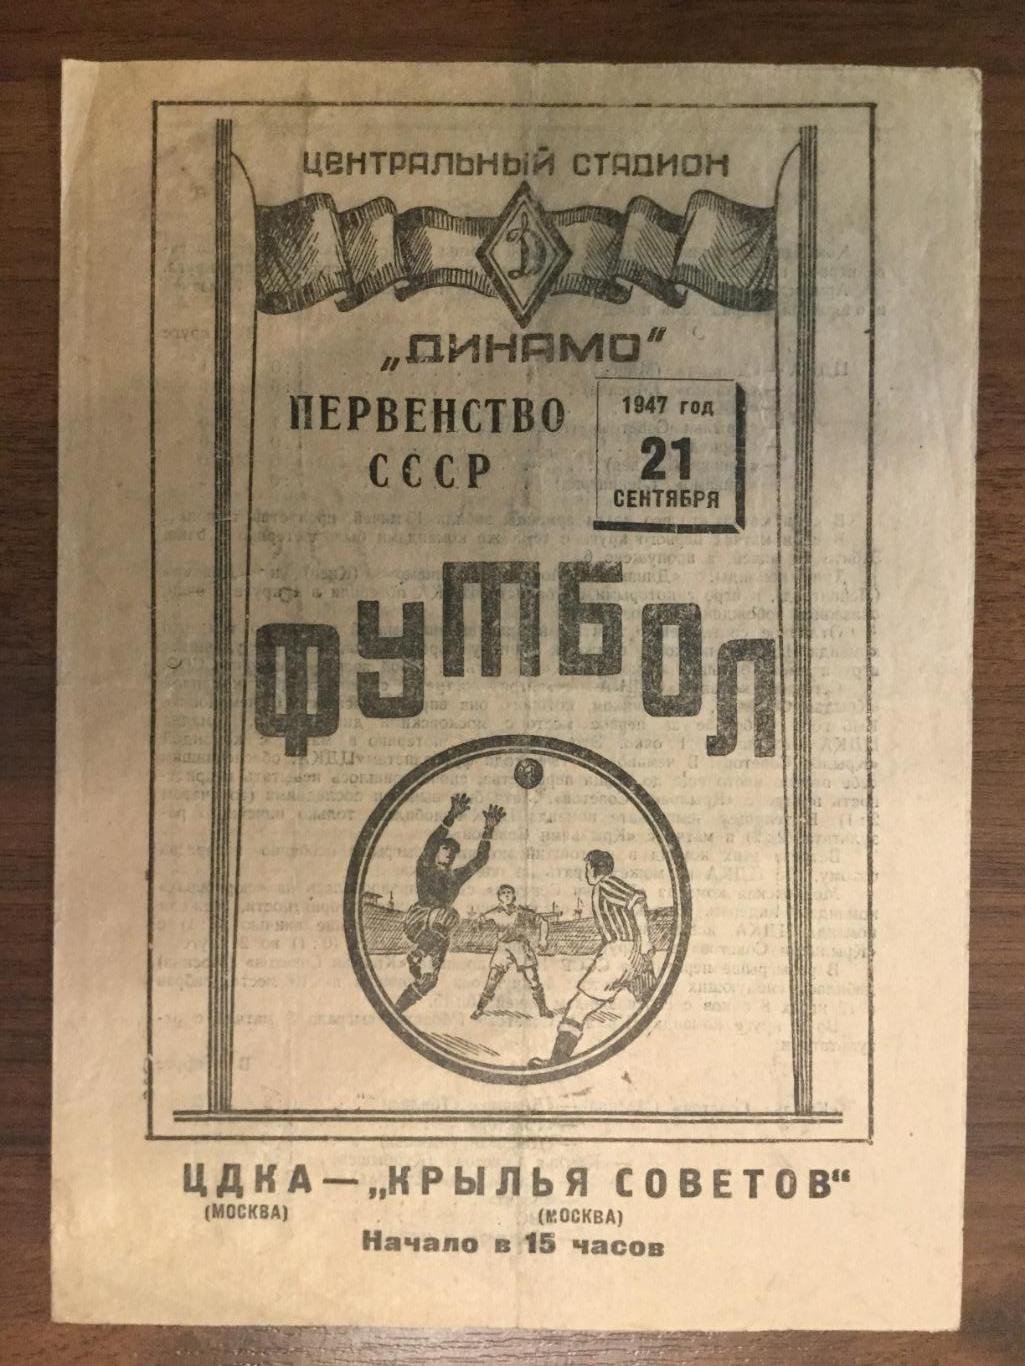 Крылья Советов Москва - ЦДКА (ЦСКА) - 1947 (21 сентября)